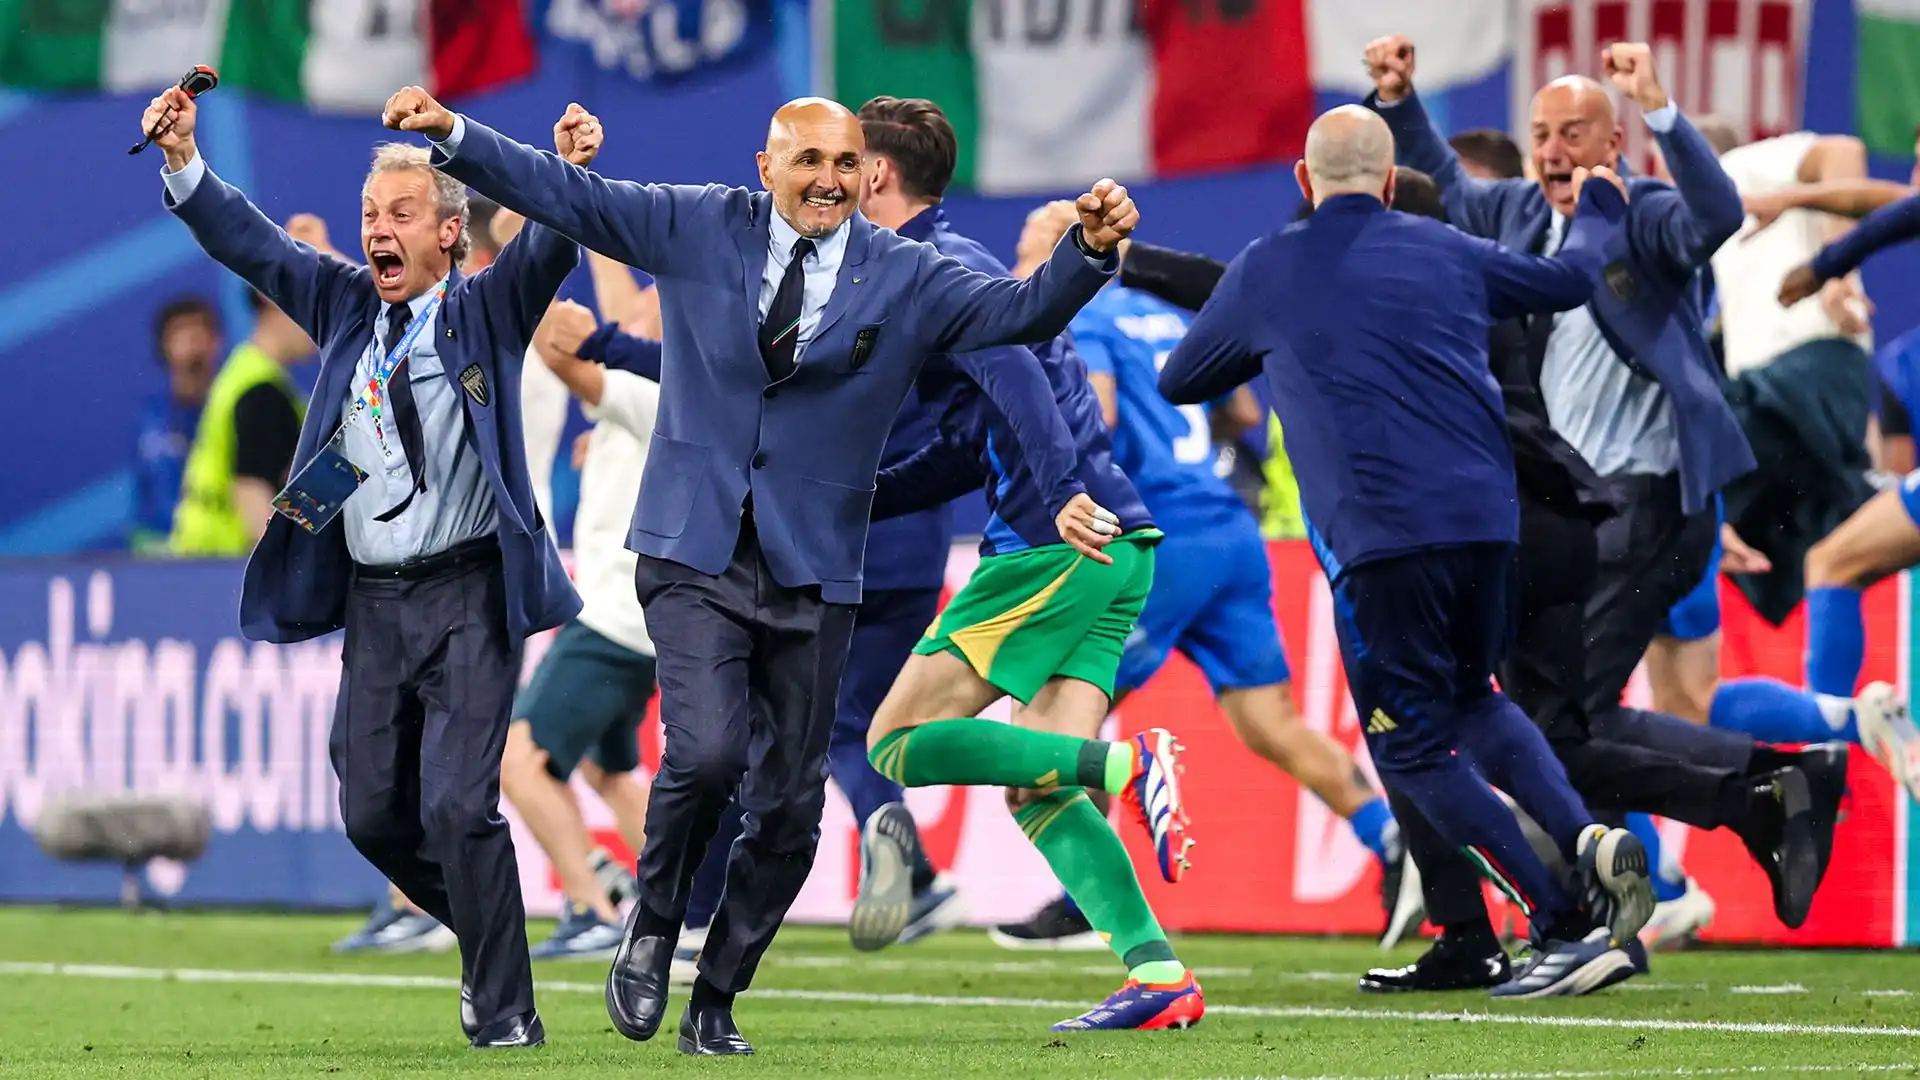 L'Italia affronterà la Svizzera agli ottavi di finale